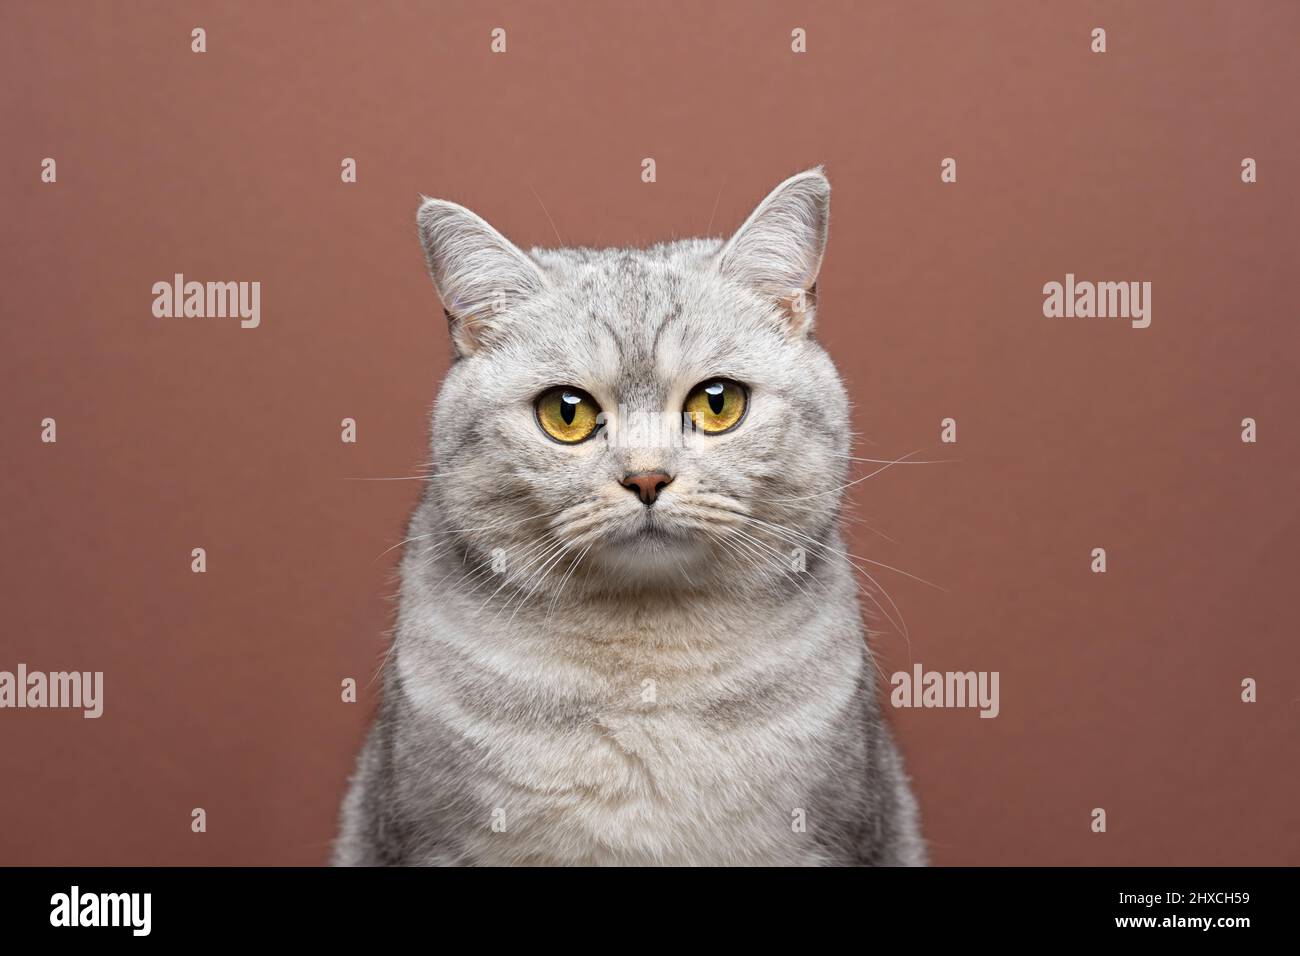 bellissimo gatto britannico corto con occhi gialli che guardano la fotocamera ritratto su sfondo marrone con spazio copia Foto Stock